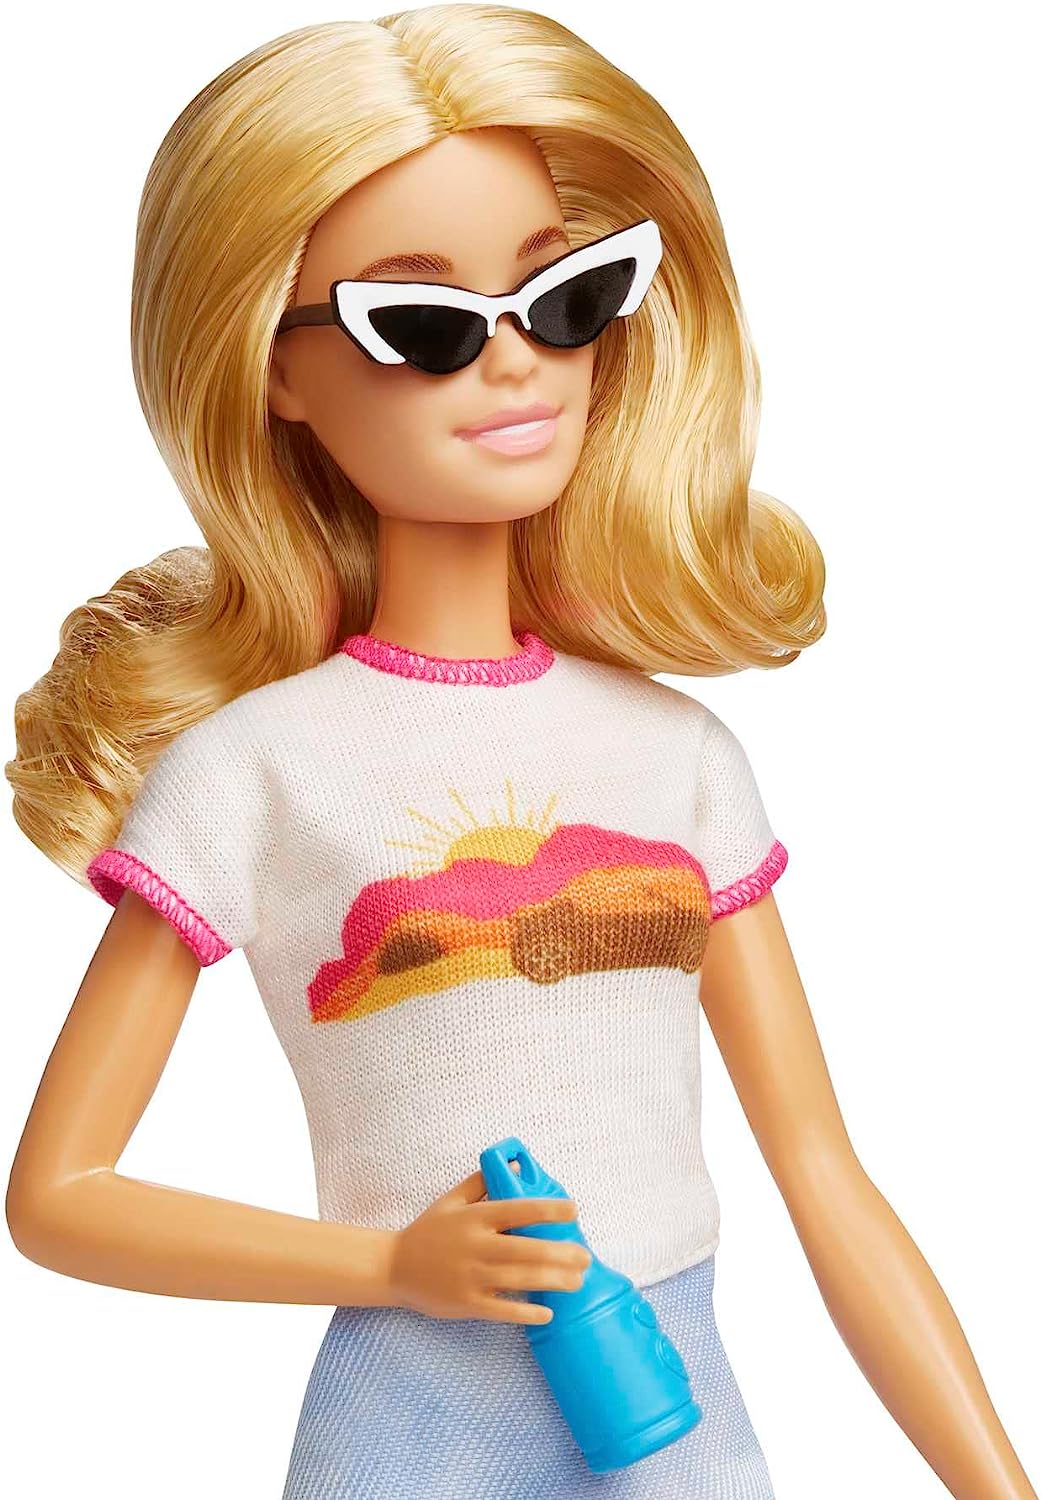 Barbie-Puppe und Zubehör, Reiseset „Malibu“ mit Welpe und mehr als 10 Teilen inkl